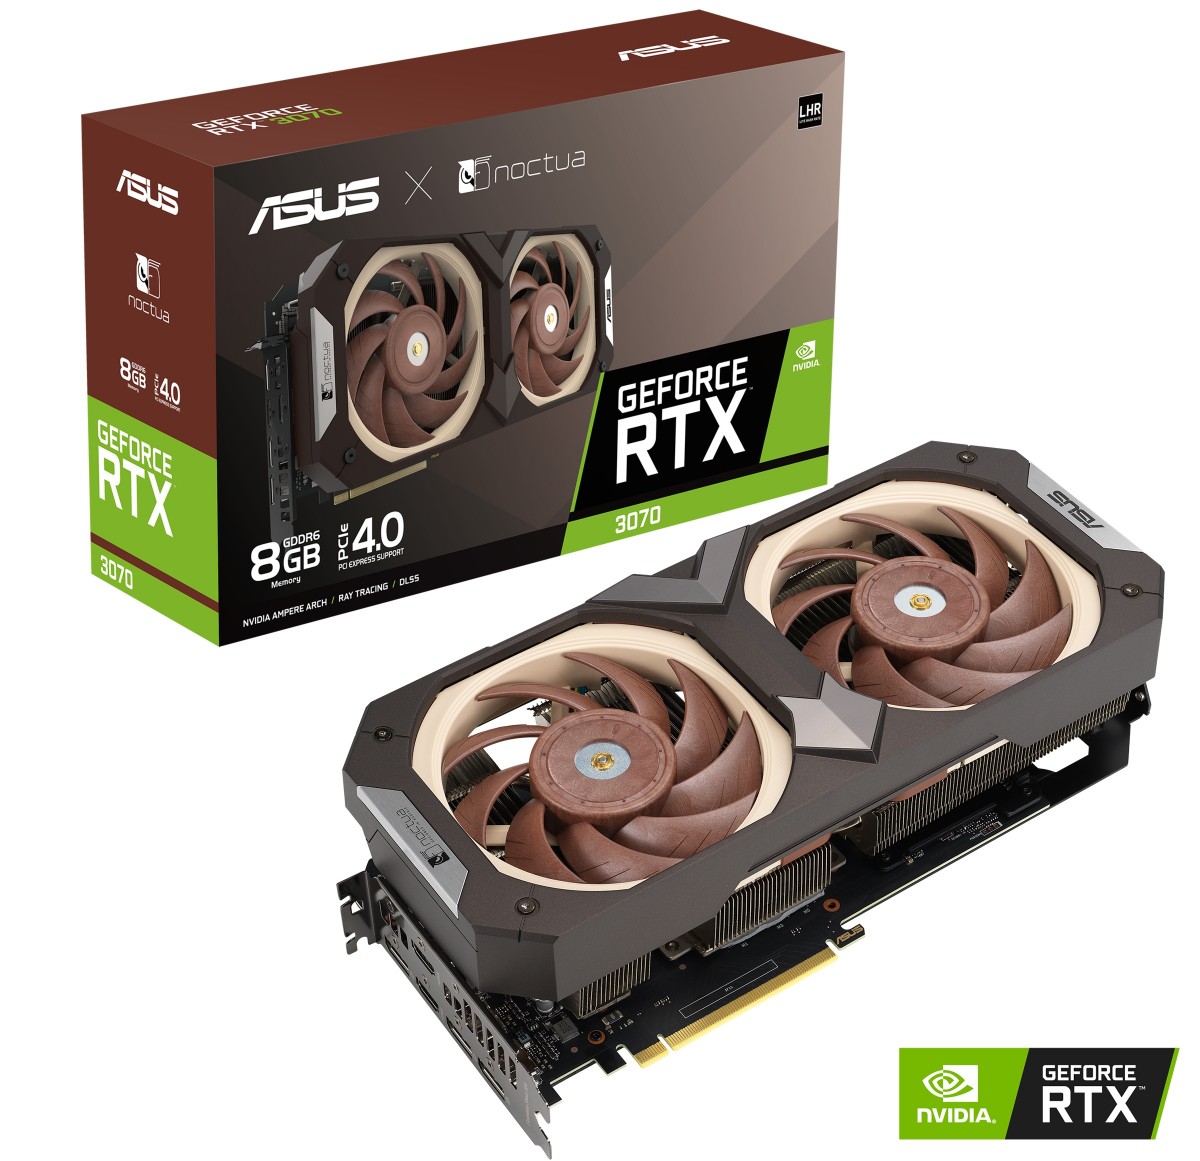 ASUS announces GeForce RTX 3070 Noctua Edition graphics card